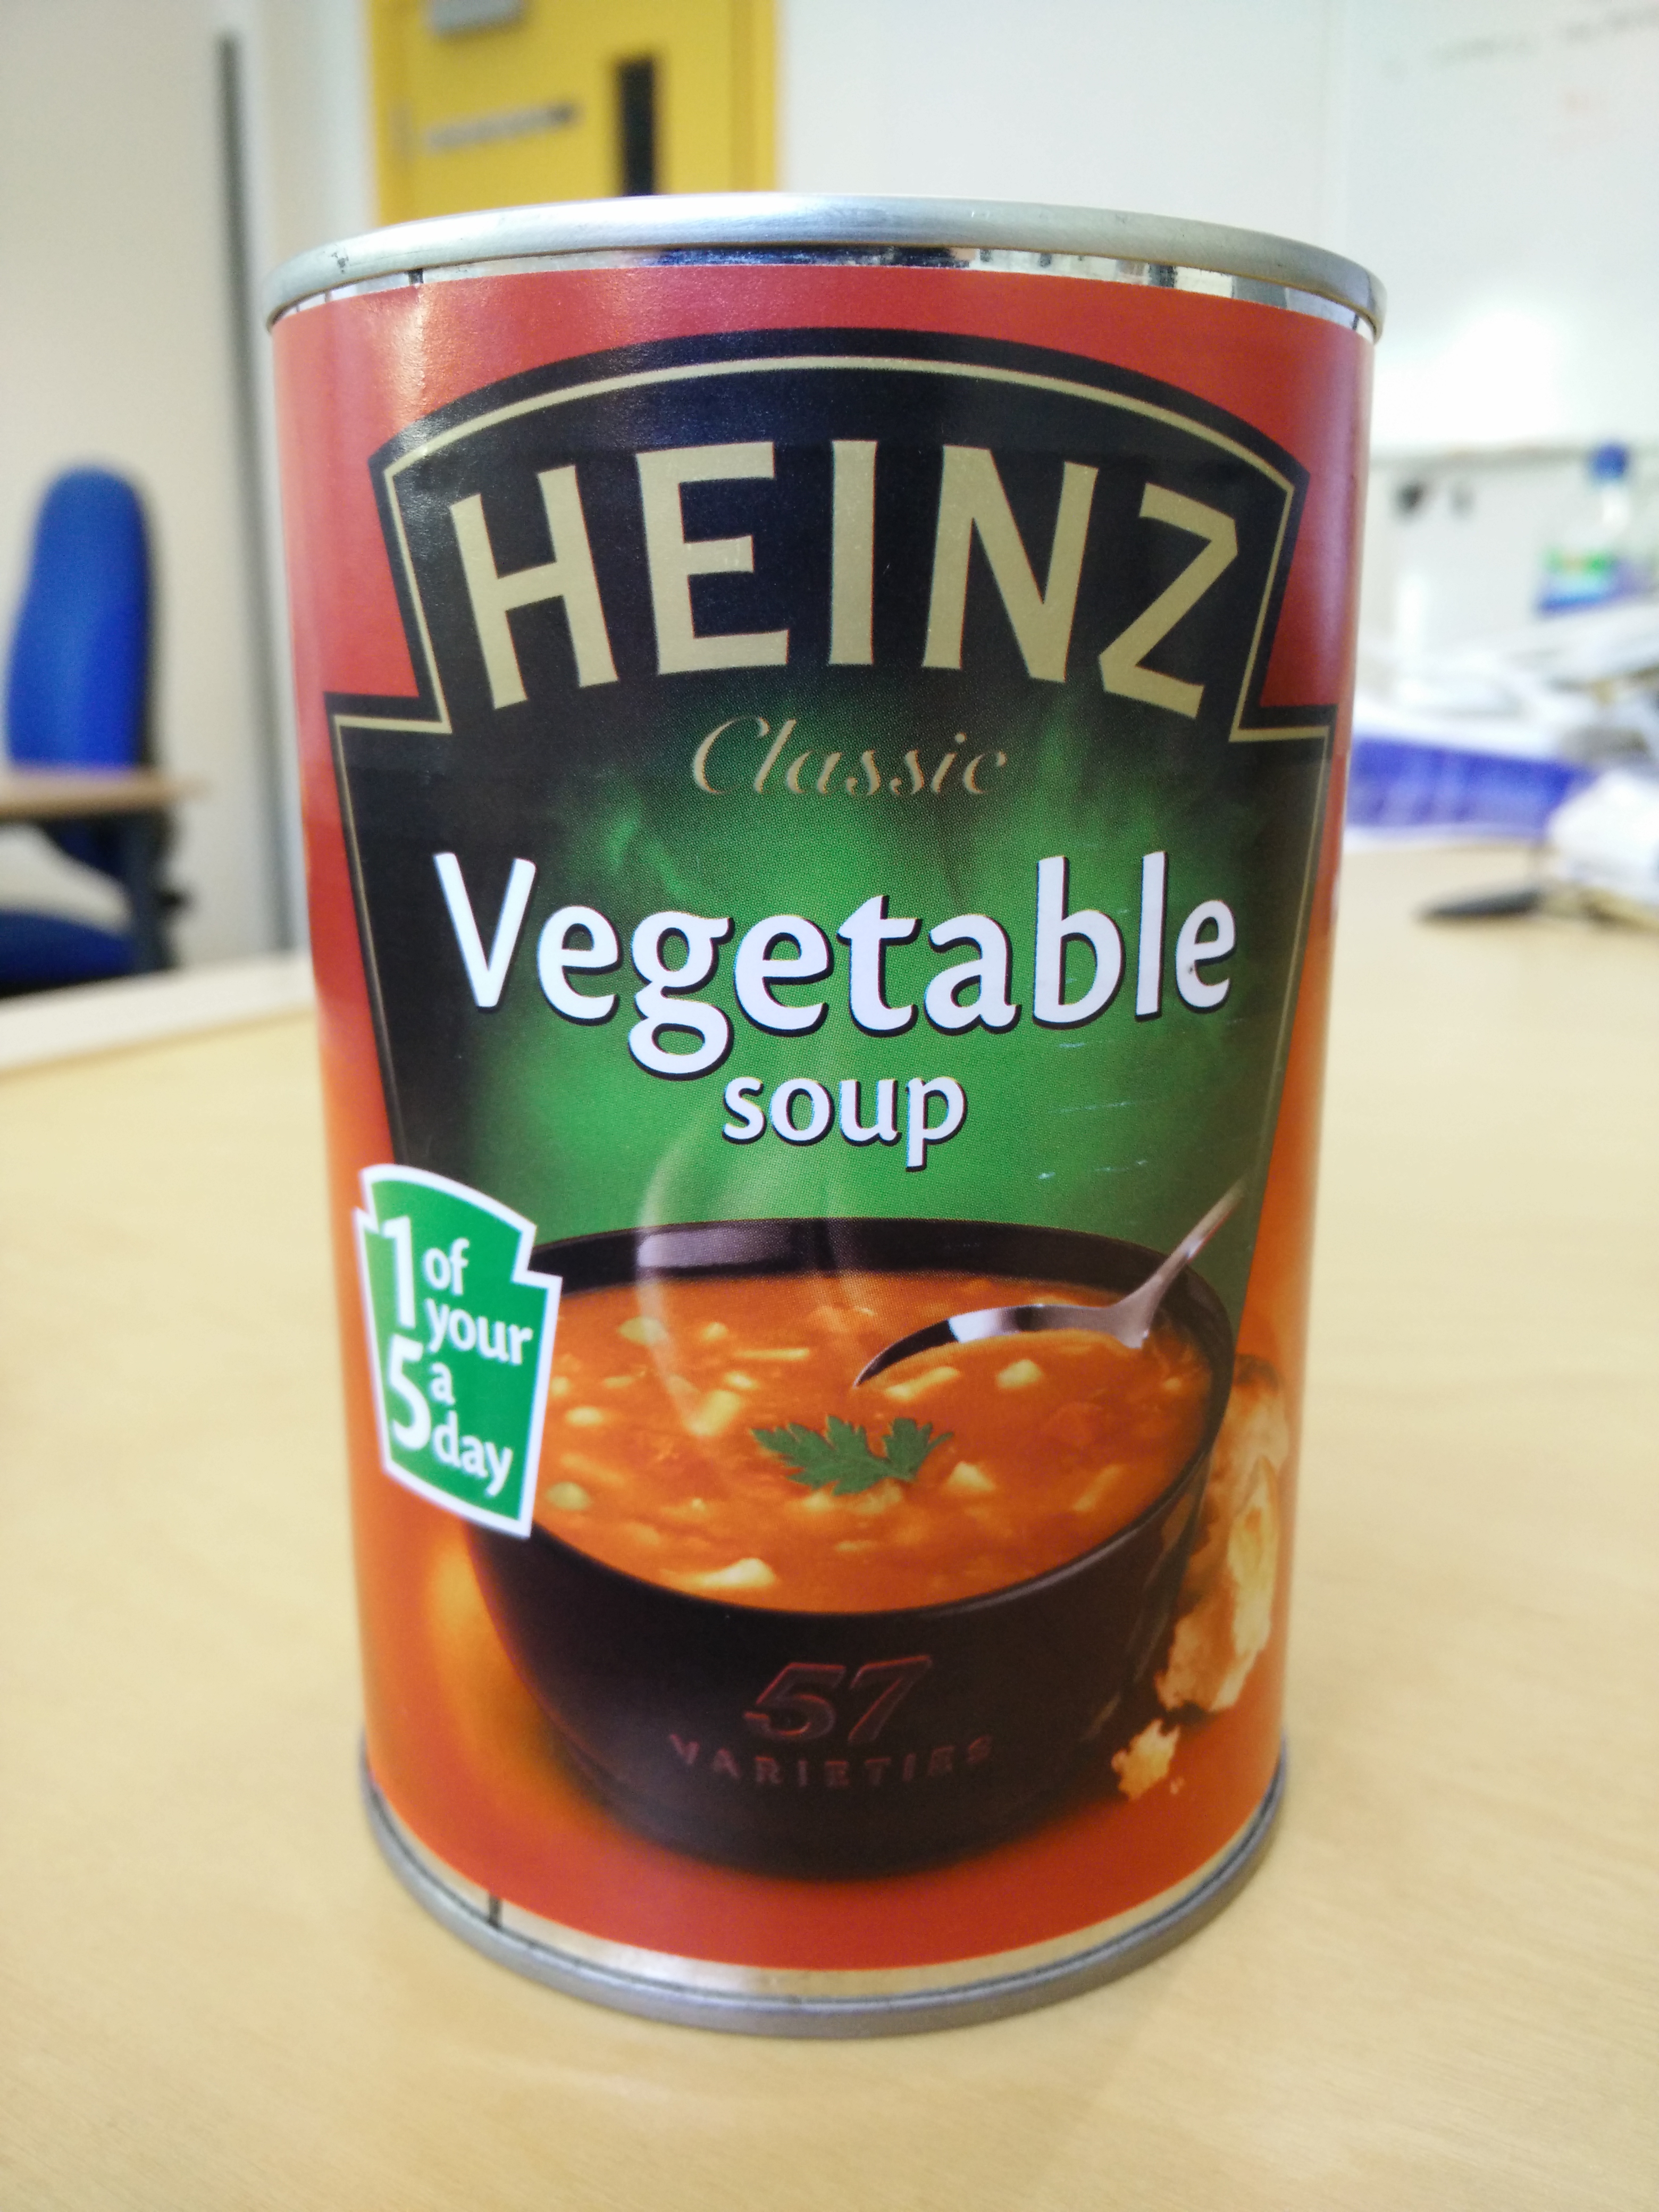 Heinz vegetable soup